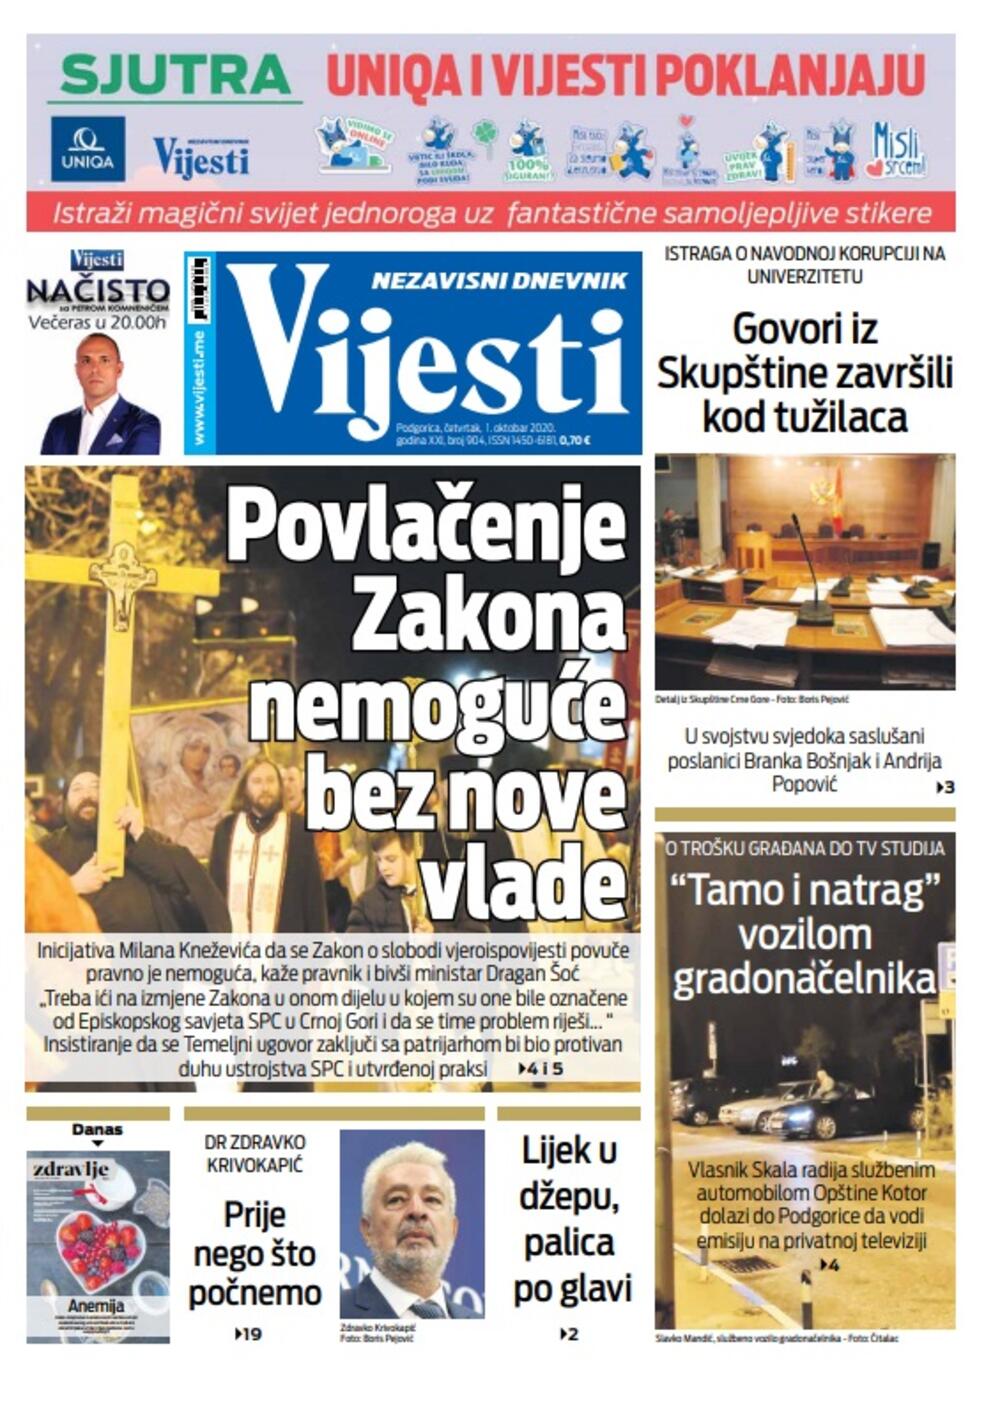 Naslovna strana "Vijesti" za 1. oktobar 2020., Foto: Vijesti